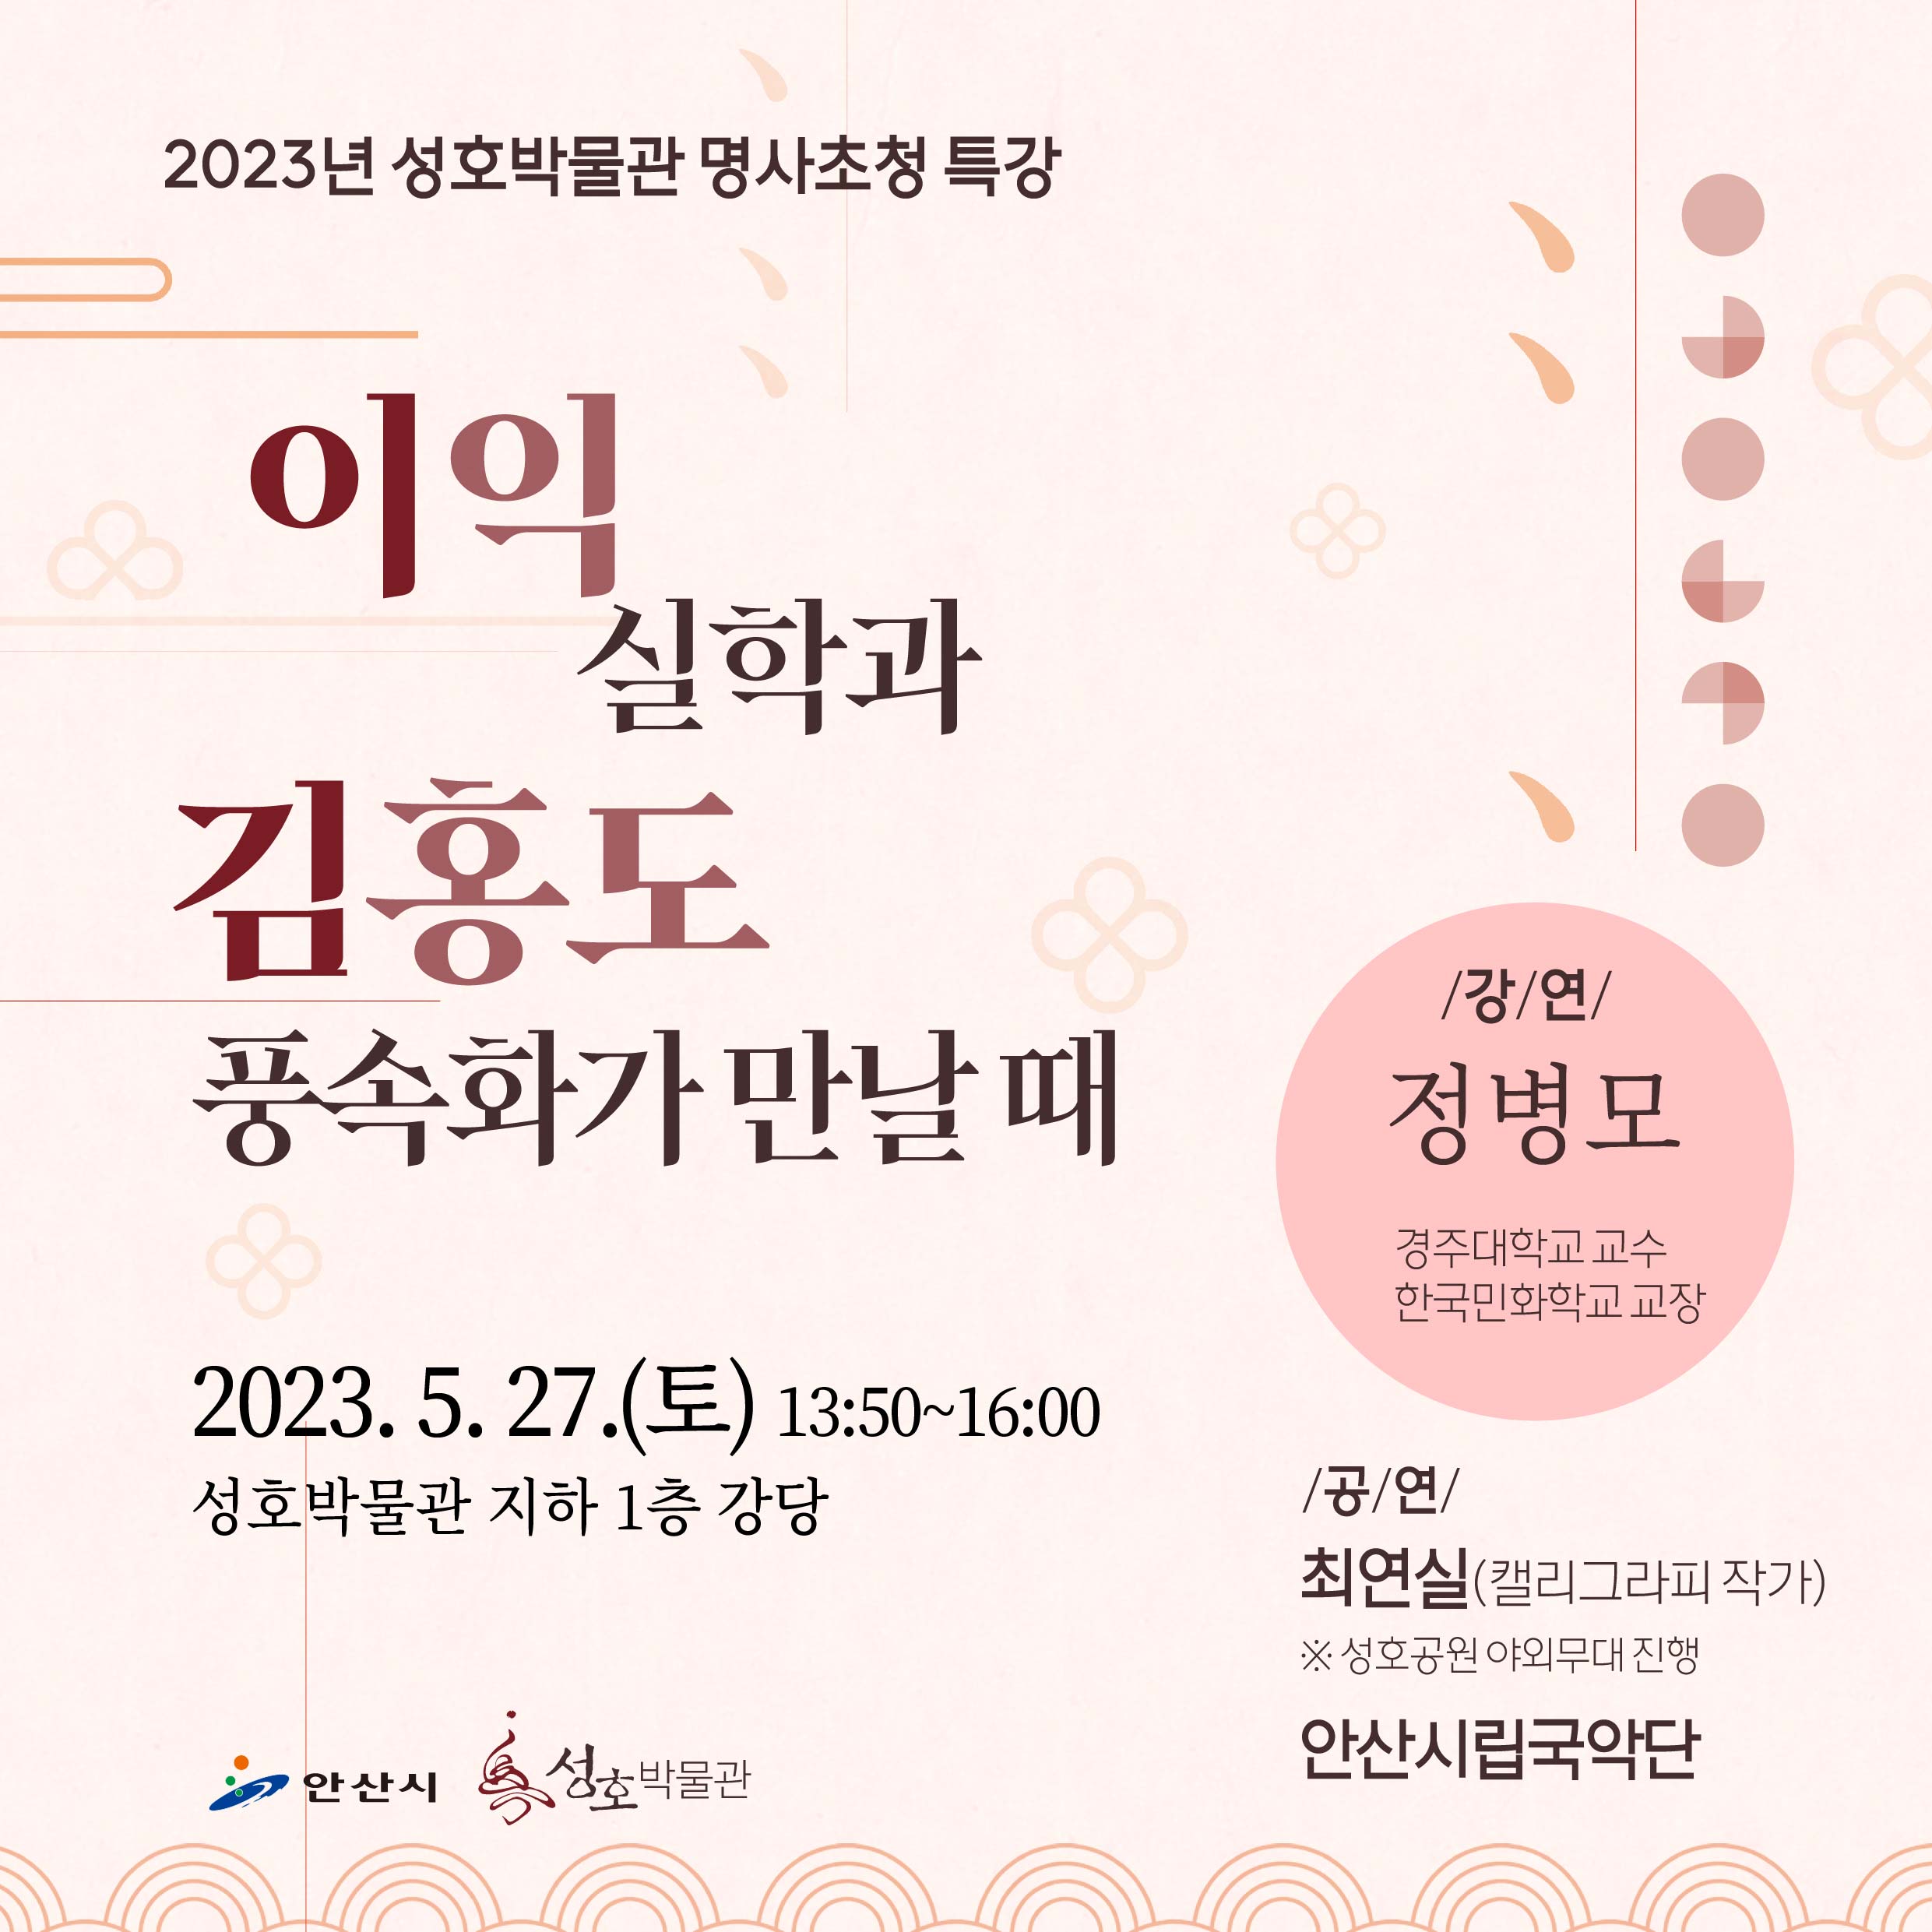 2023년 성호박물관 <명사초청 특강> 개최(5/27)  사진